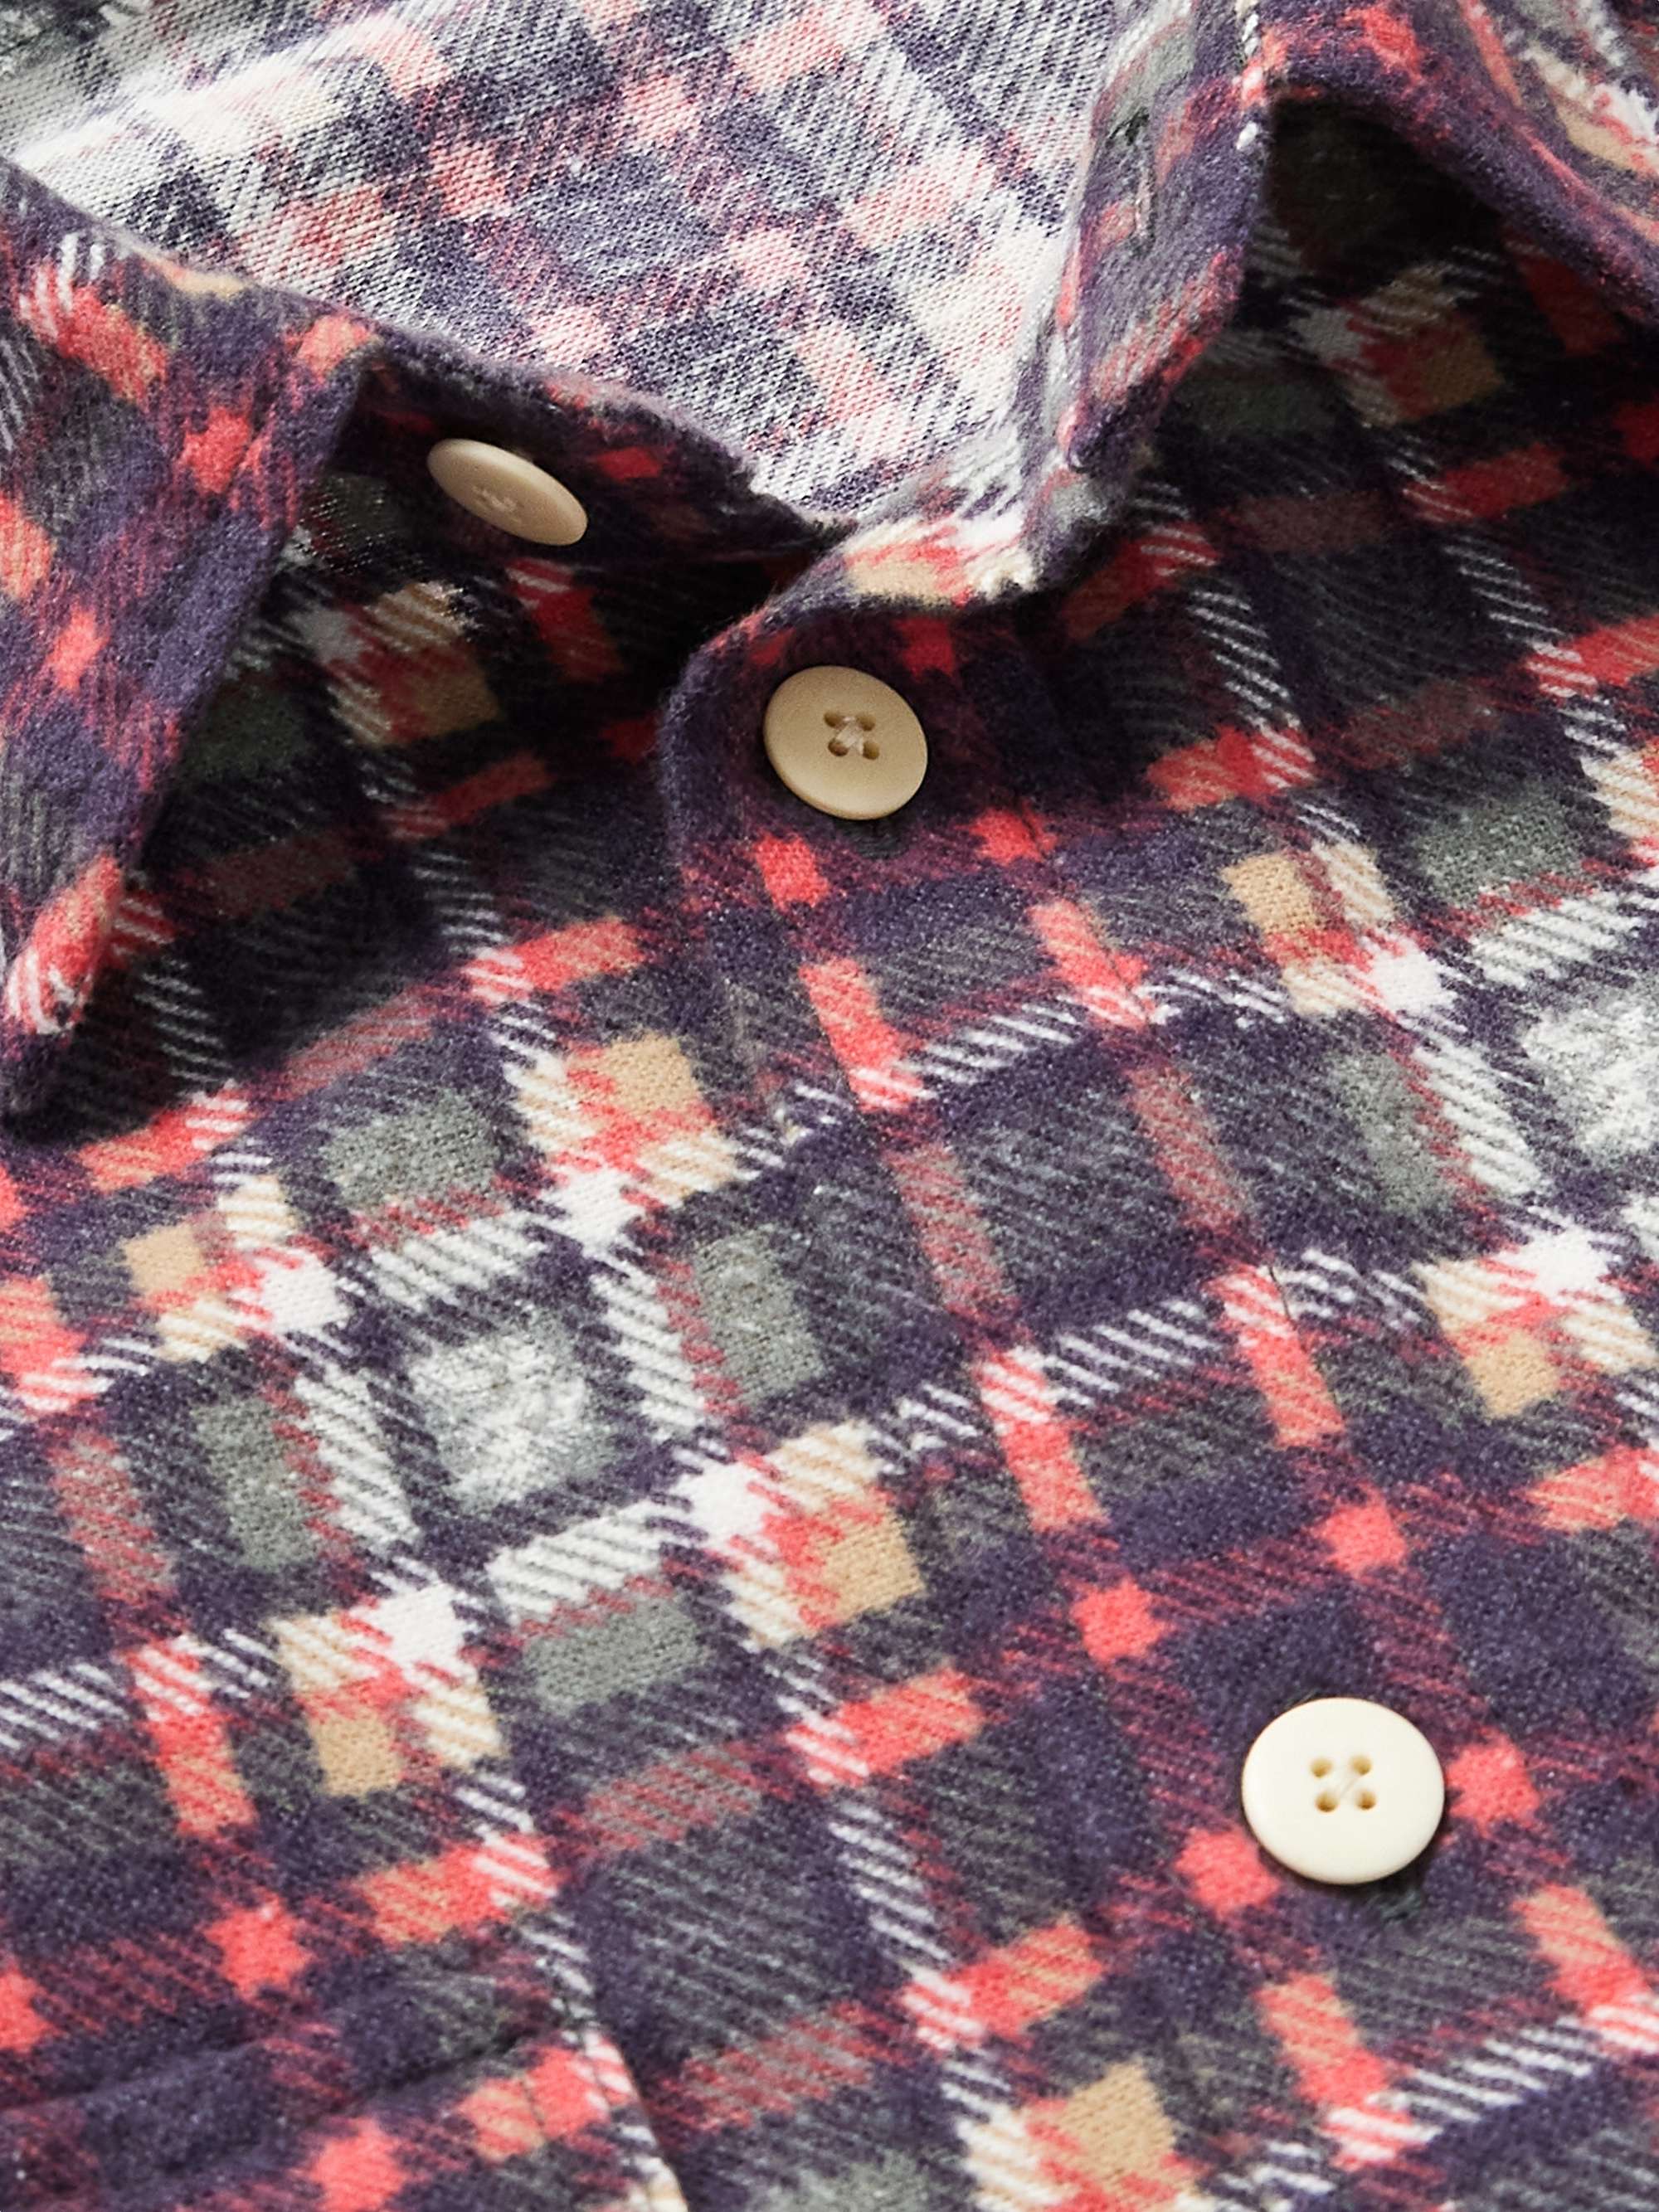 VISVIM Pioneer Checked Cotton-Flannel Shirt